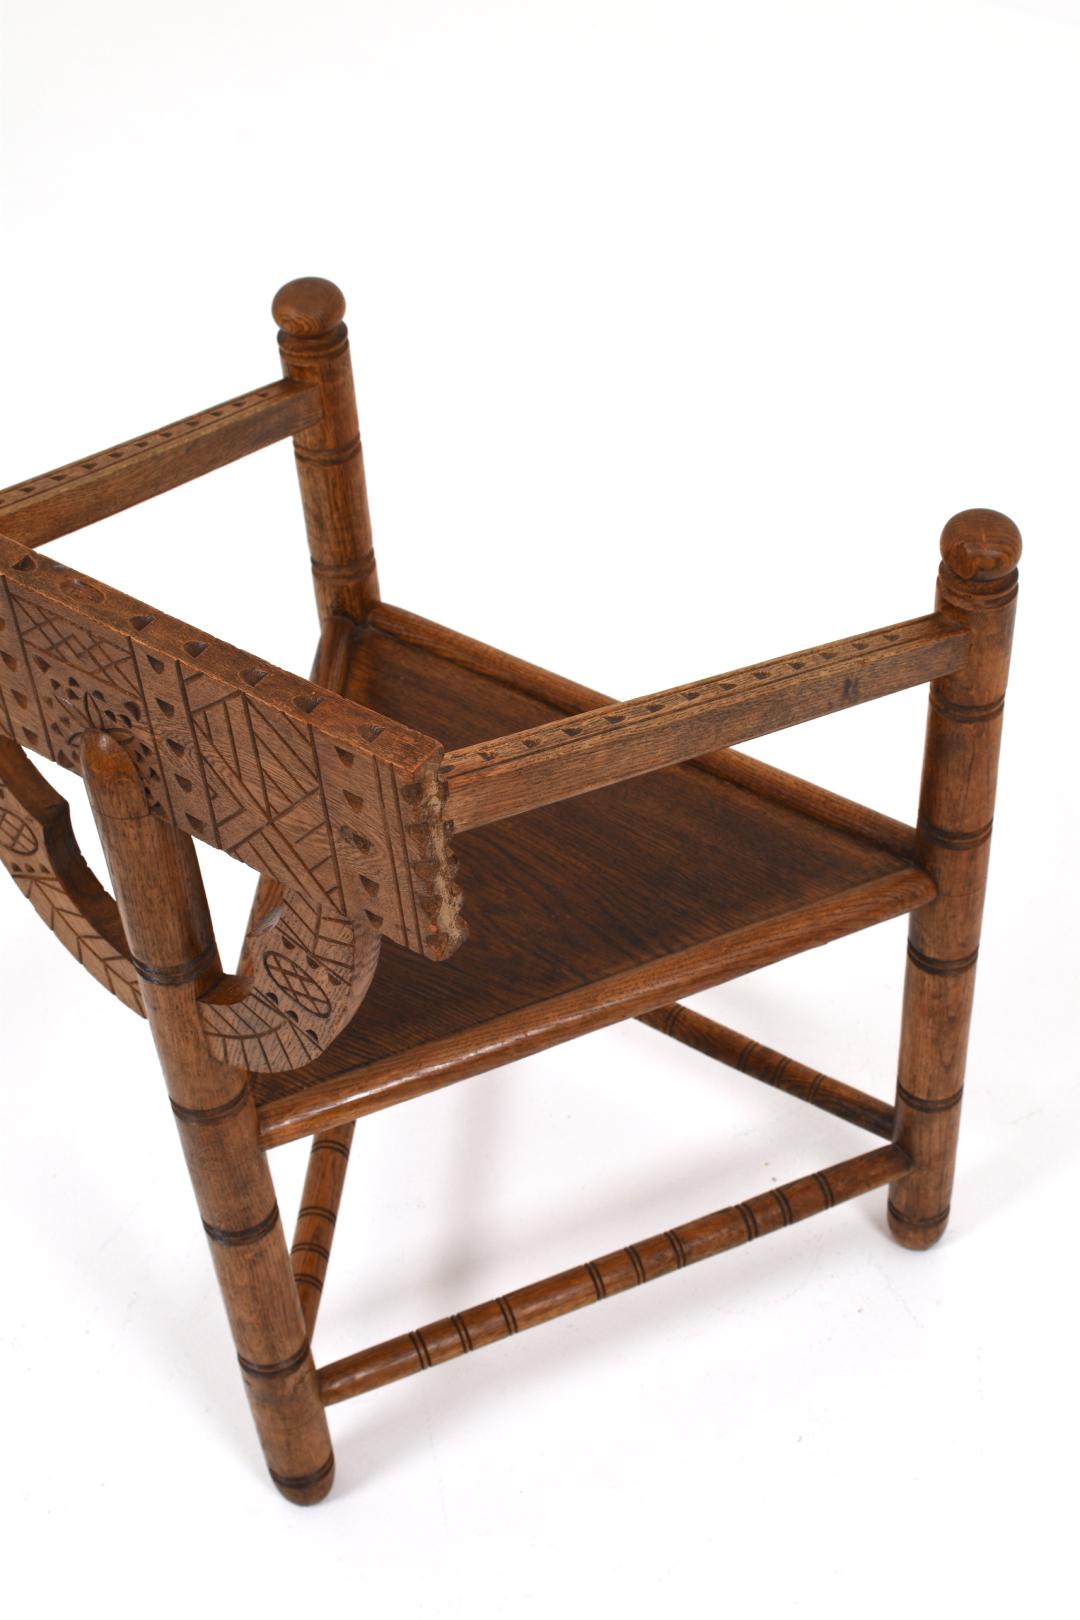 Cette chaise a été fabriquée en Suède au début des années 1900. Ce style est appelé 